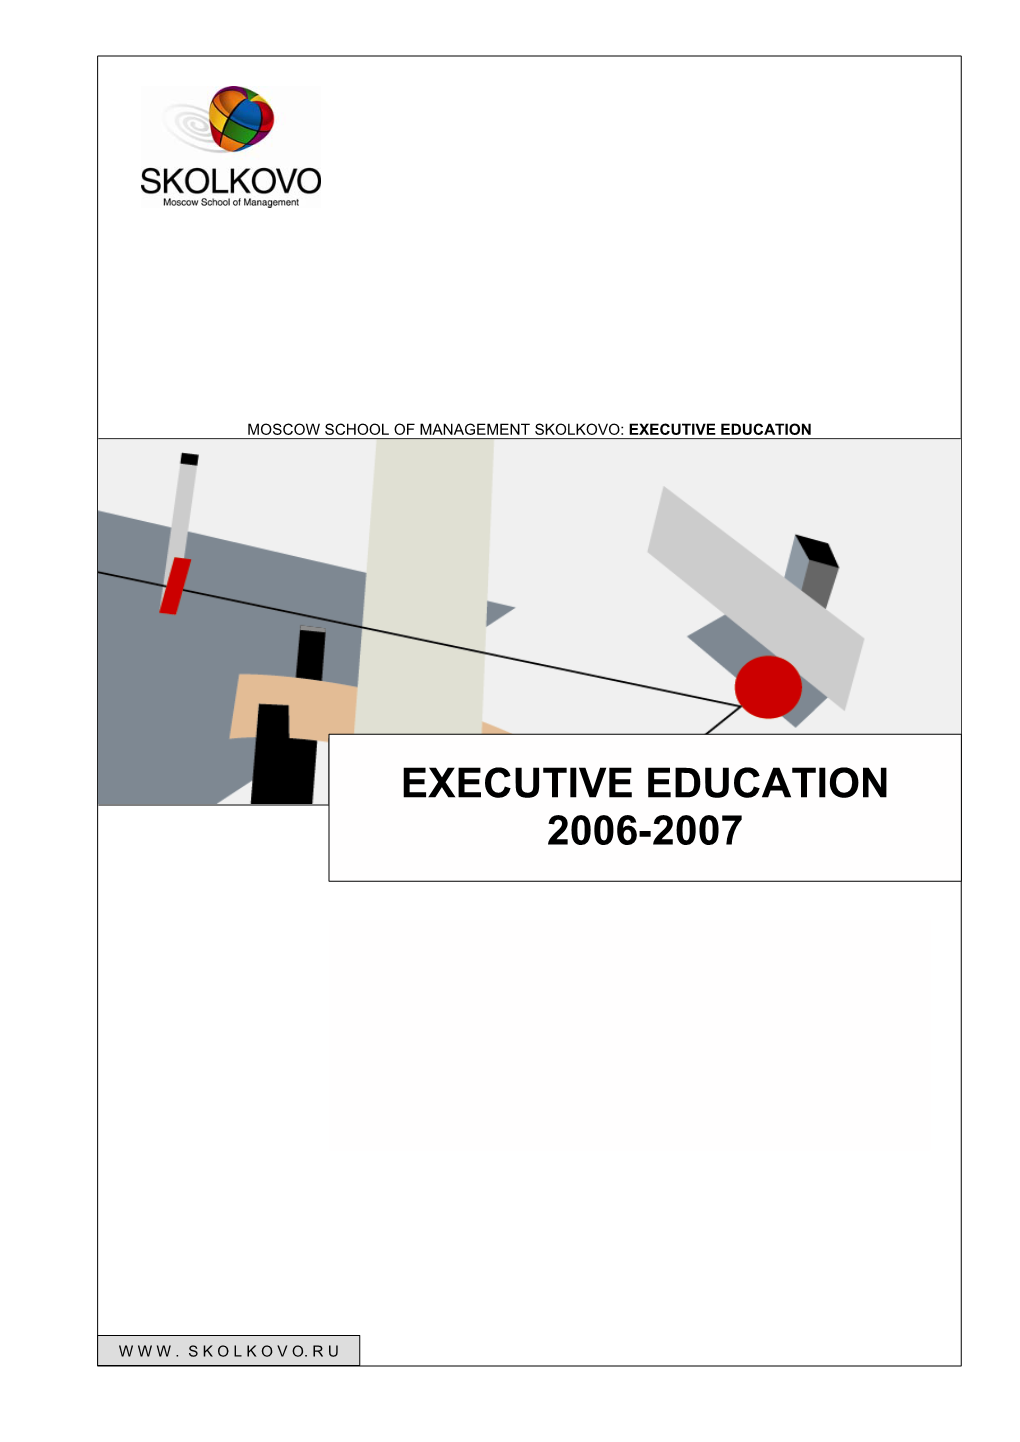 Executive Education 2006-2007